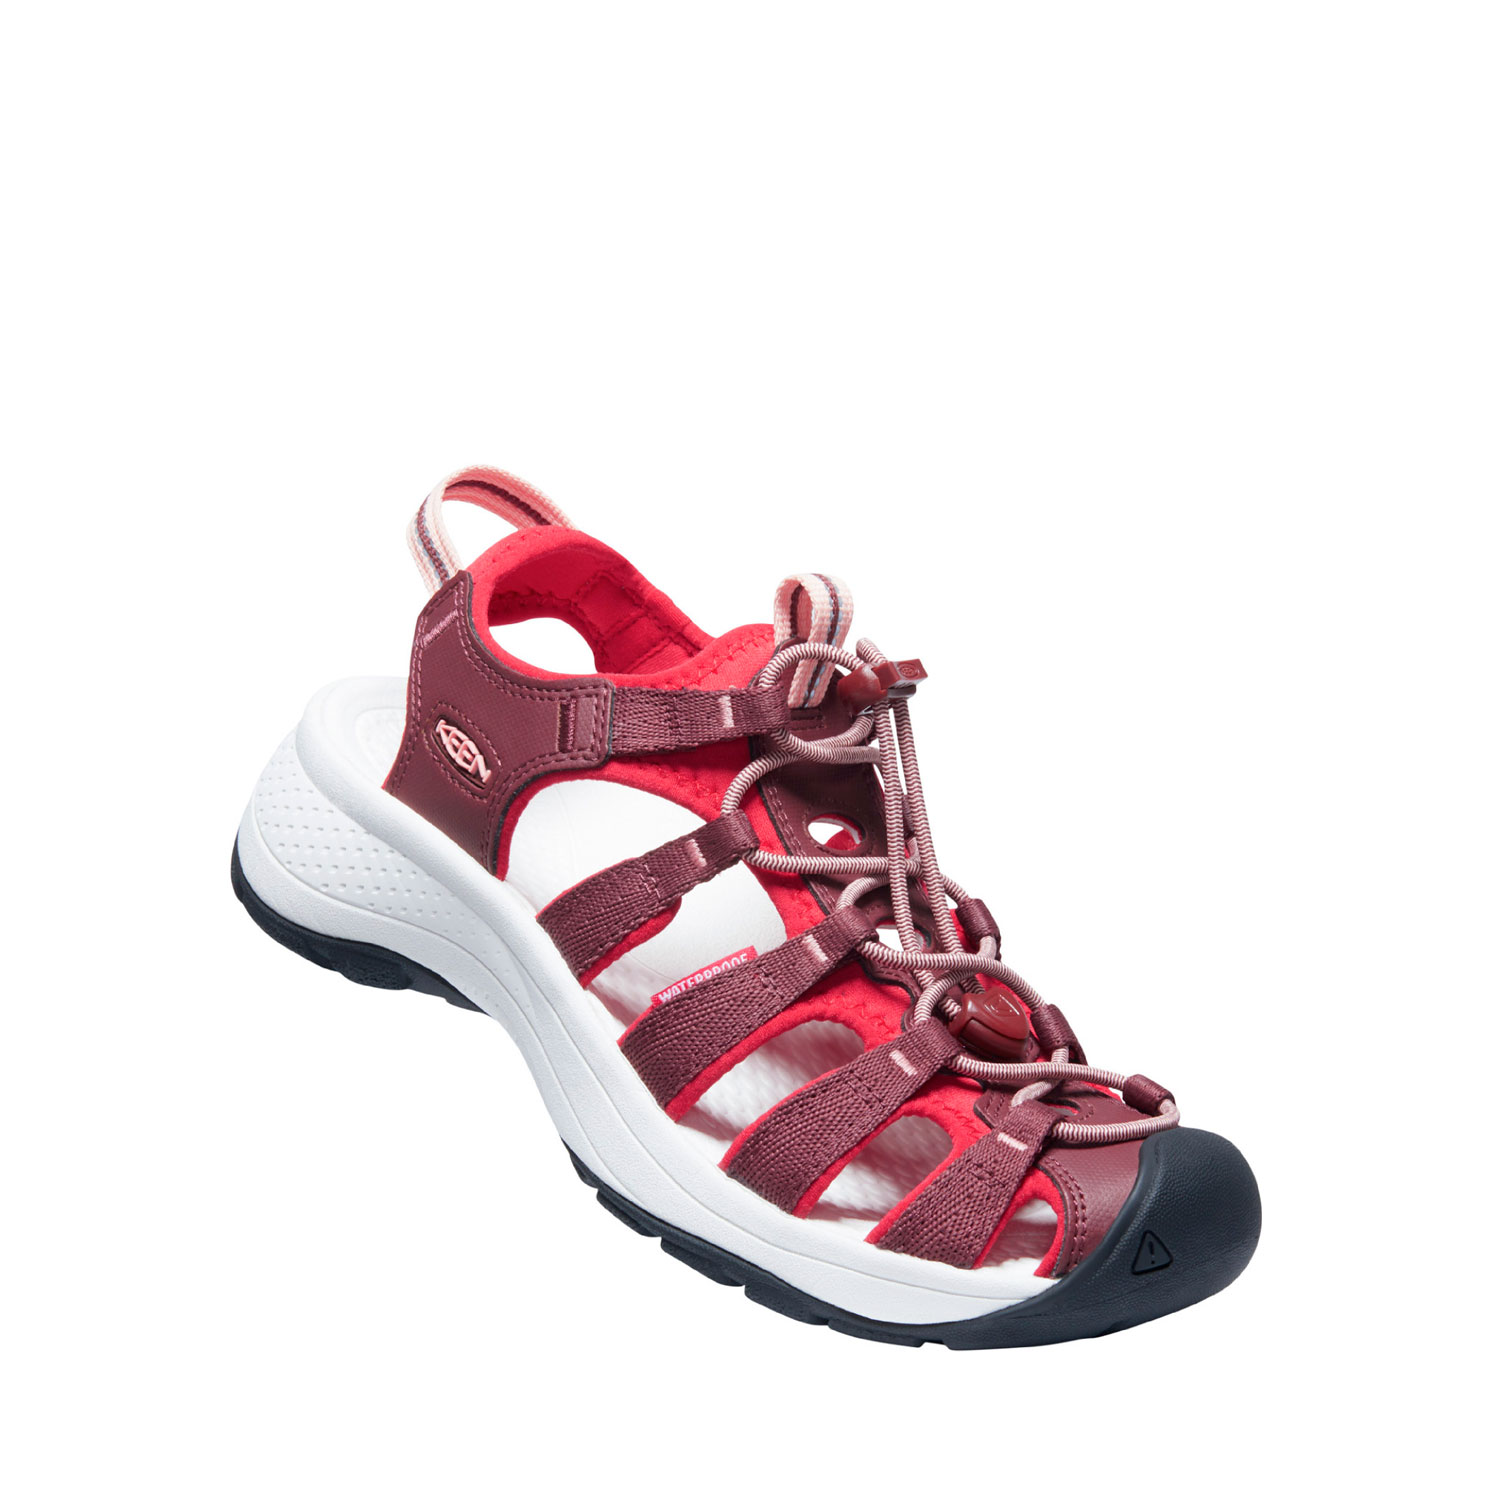 Sidovy på den breda och lätta sandalen Keen W Astoria West Sandal i roströd och röd